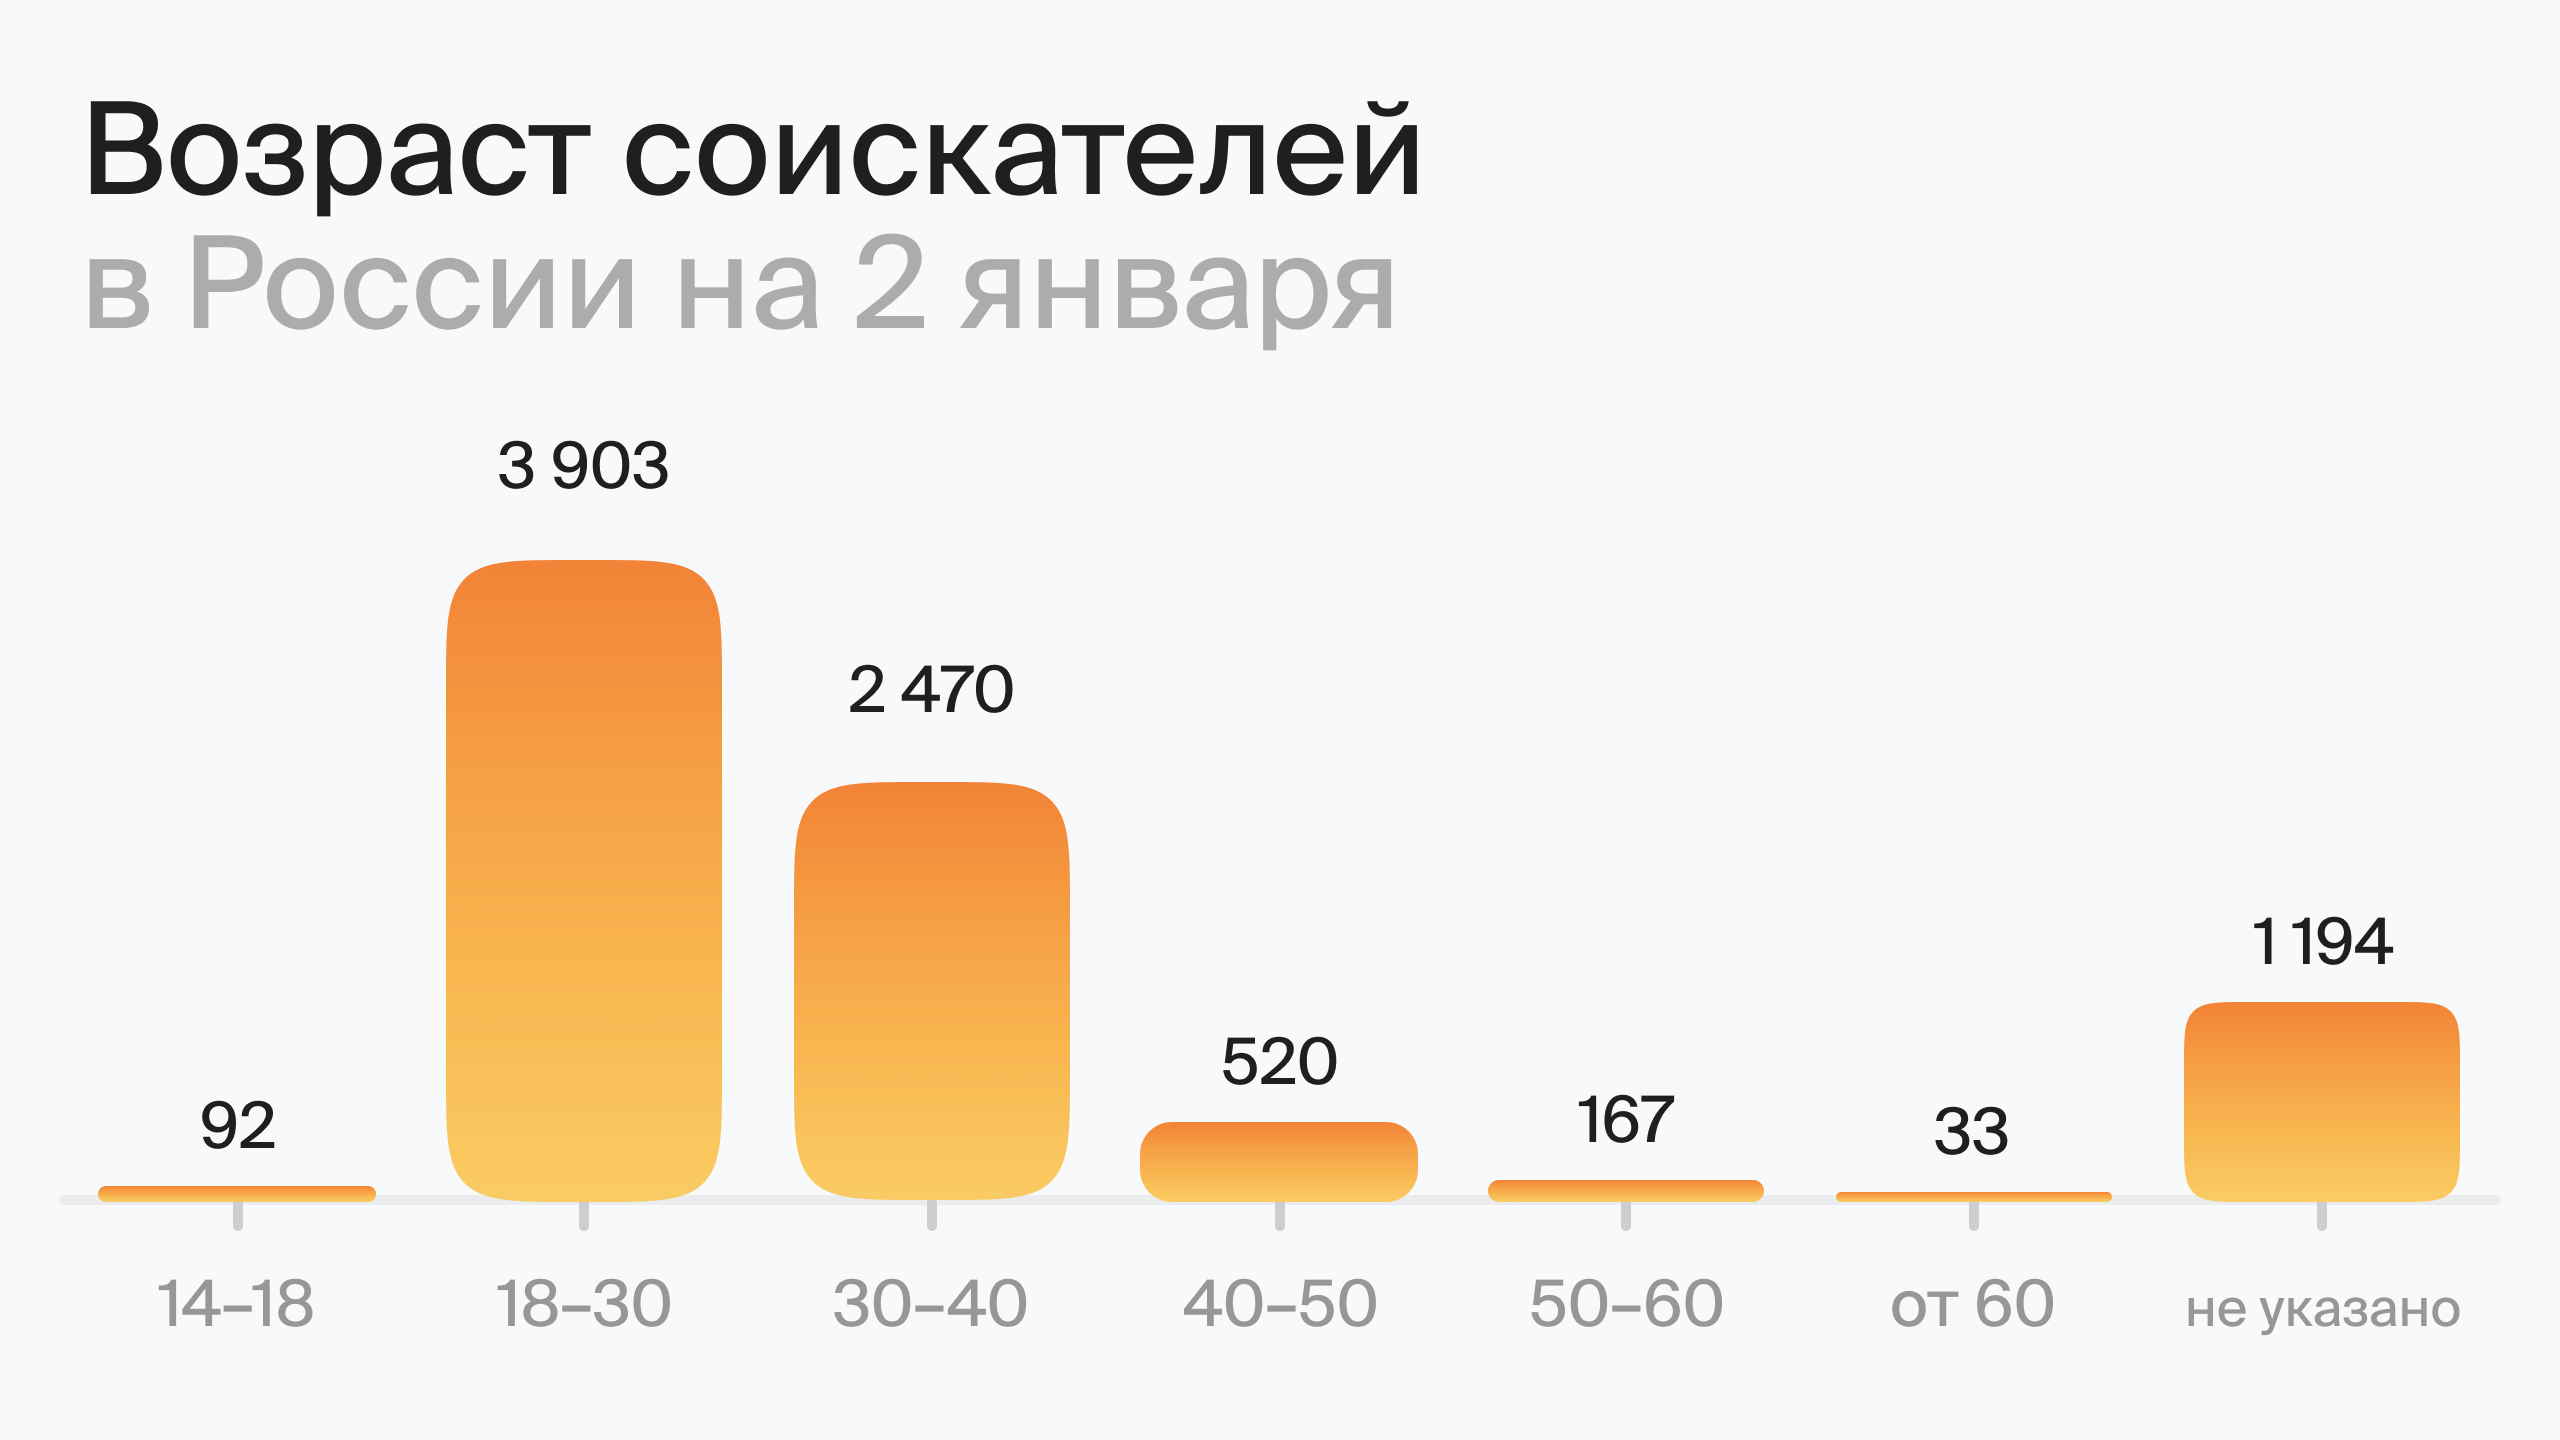 Возраст соискателей в России на 2 января (по данным hh.ru)